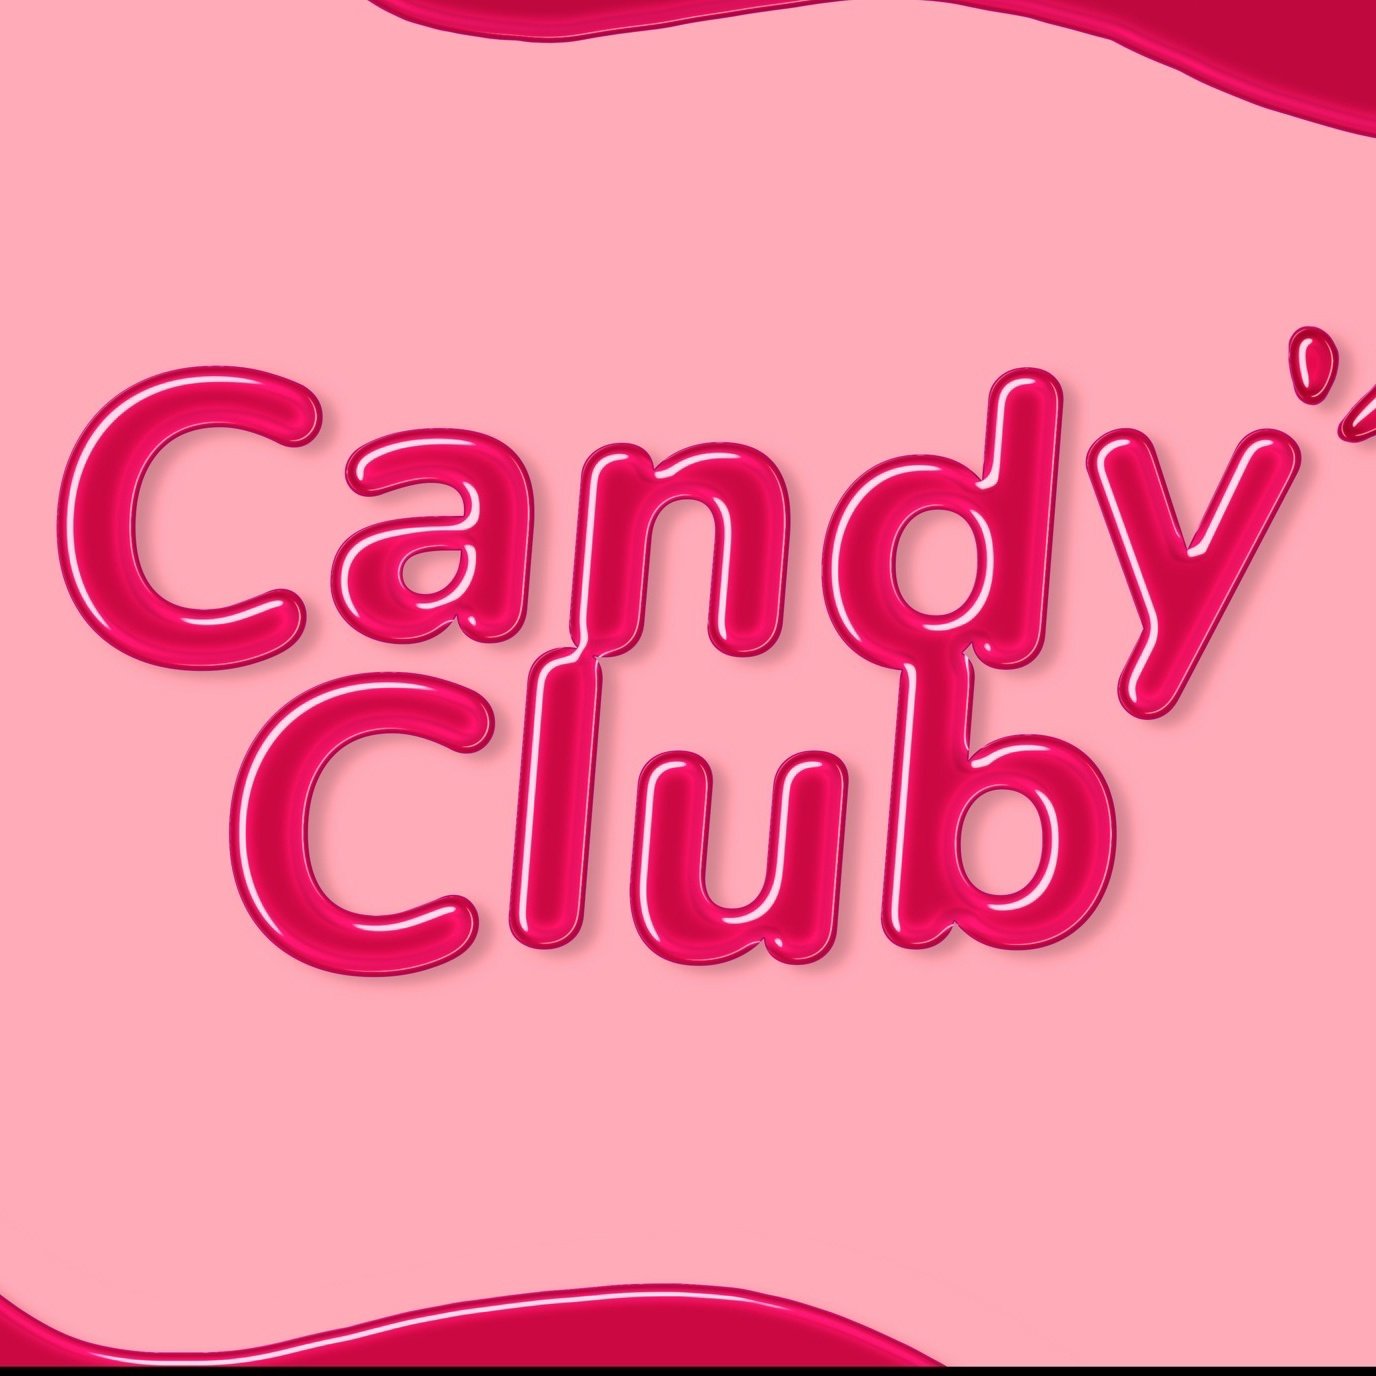 Candy club работа моделью. Кэнди клуб. Продукция Кэнди клаб. Кенди Елаб. Кенди клаб логотип.